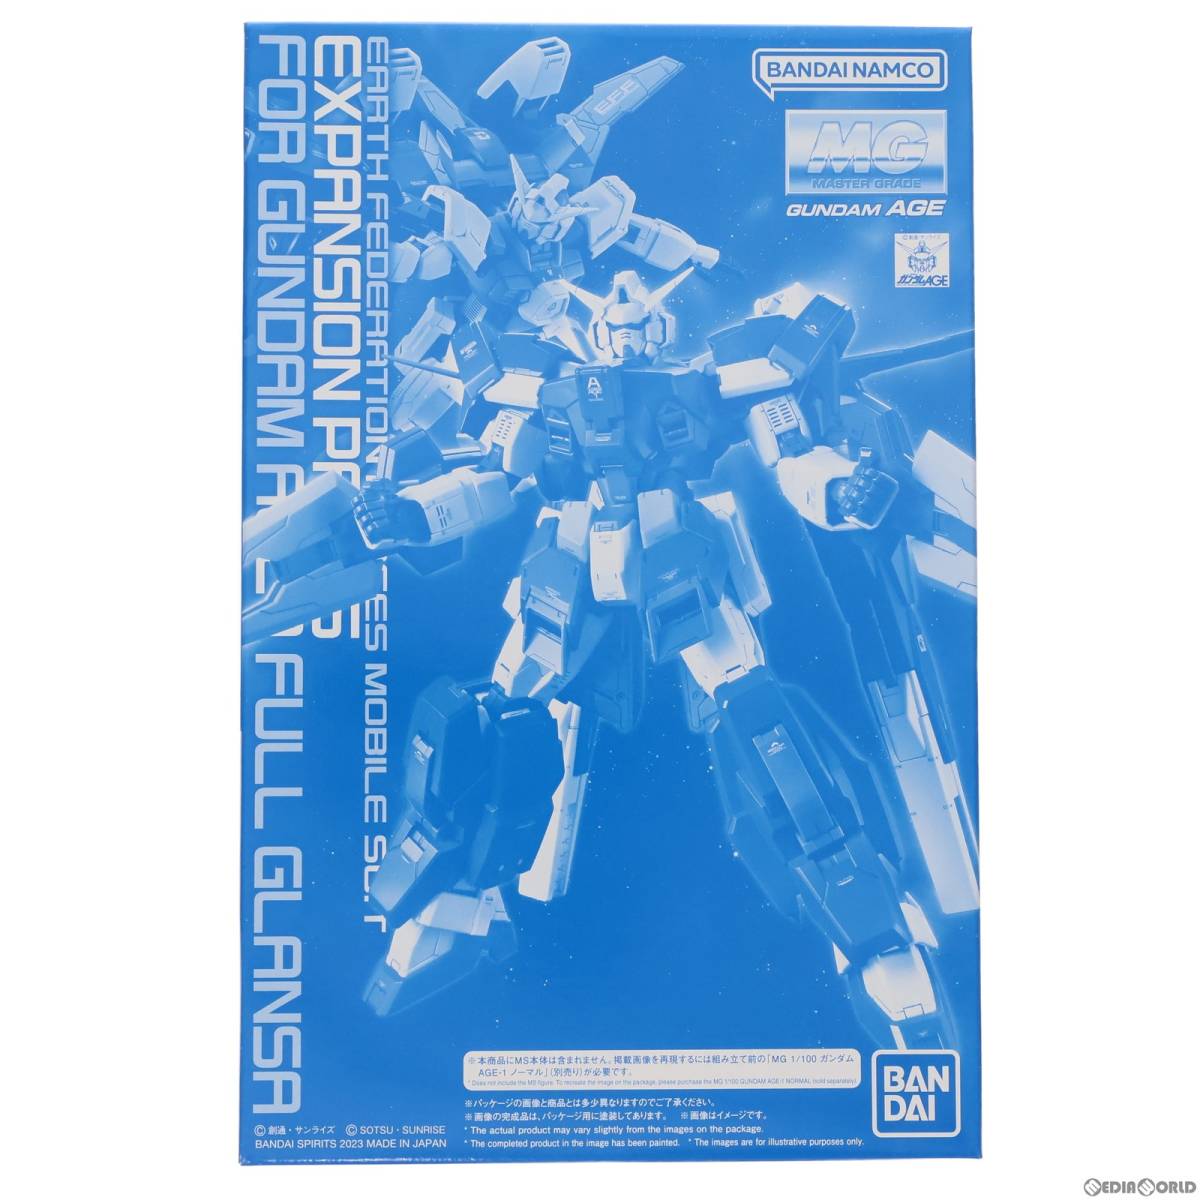 [ б/у ][PTM] premium Bandai ограничение MG 1/100 AGE-1G Gundam AGE-1f legrand sa для повышение детали Mobile Suit Gundam AGE(eiji) пластиковая модель 